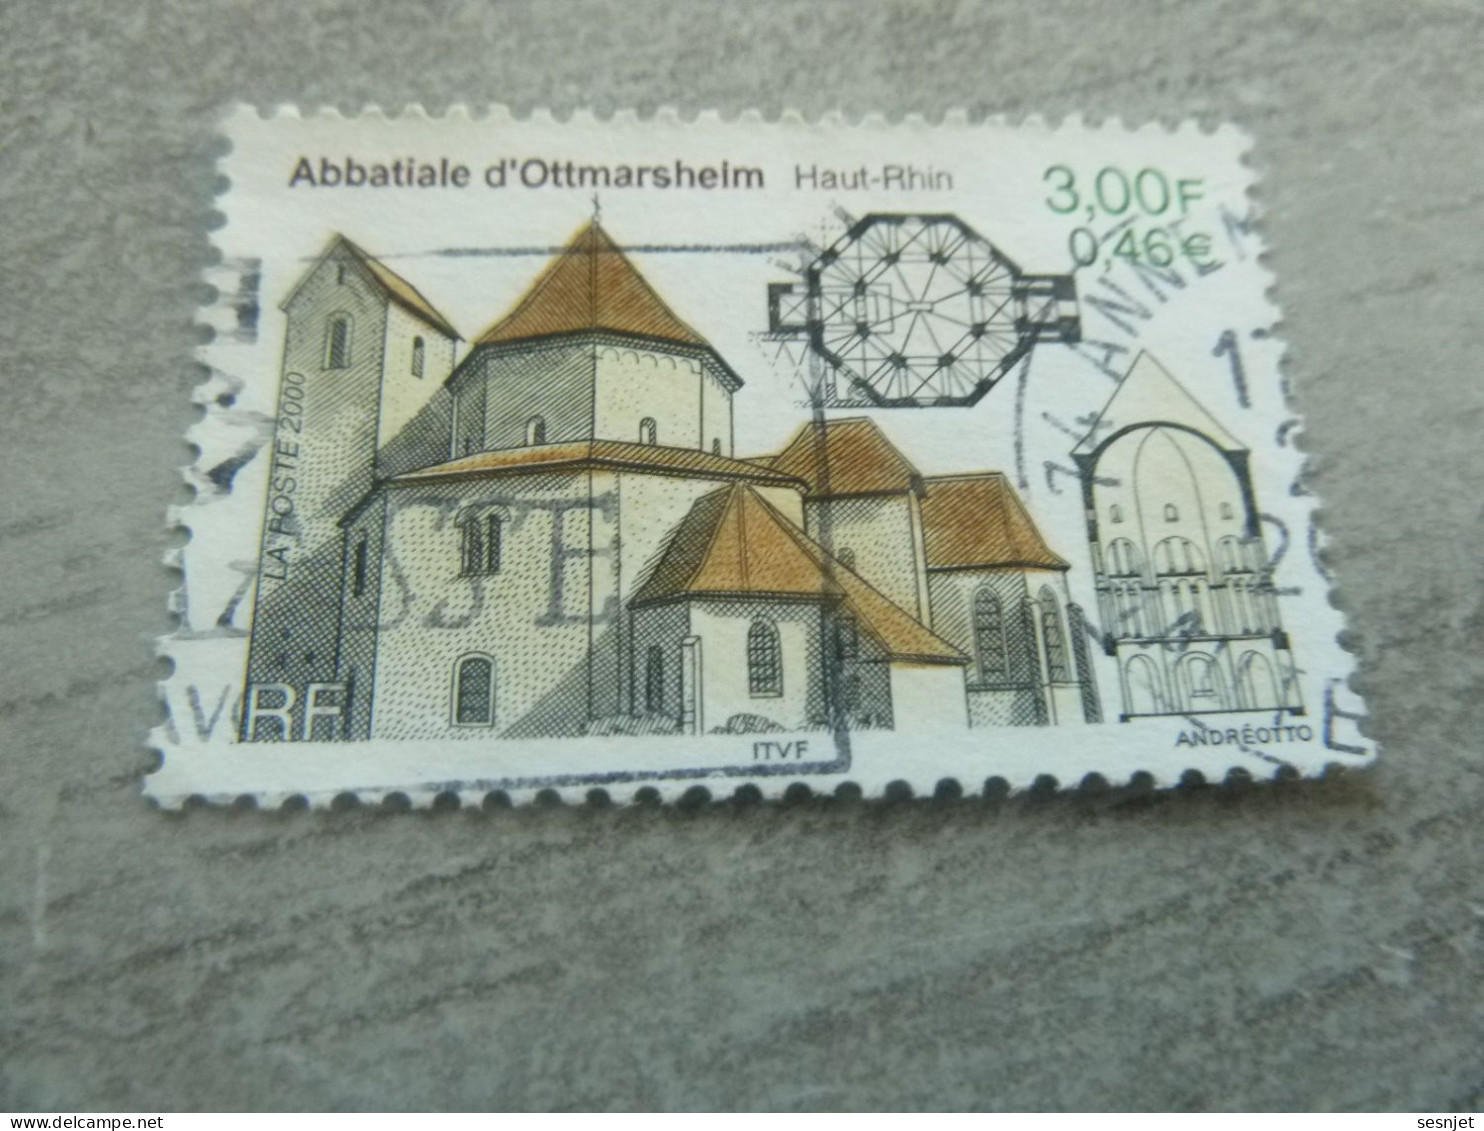 Abbatiale D'Ottmarsheim - Haut-Rhin - 3f. (0.46 €) - Yt 3336 - Multicolore - Oblitéré - Année 2000 - - Churches & Cathedrals